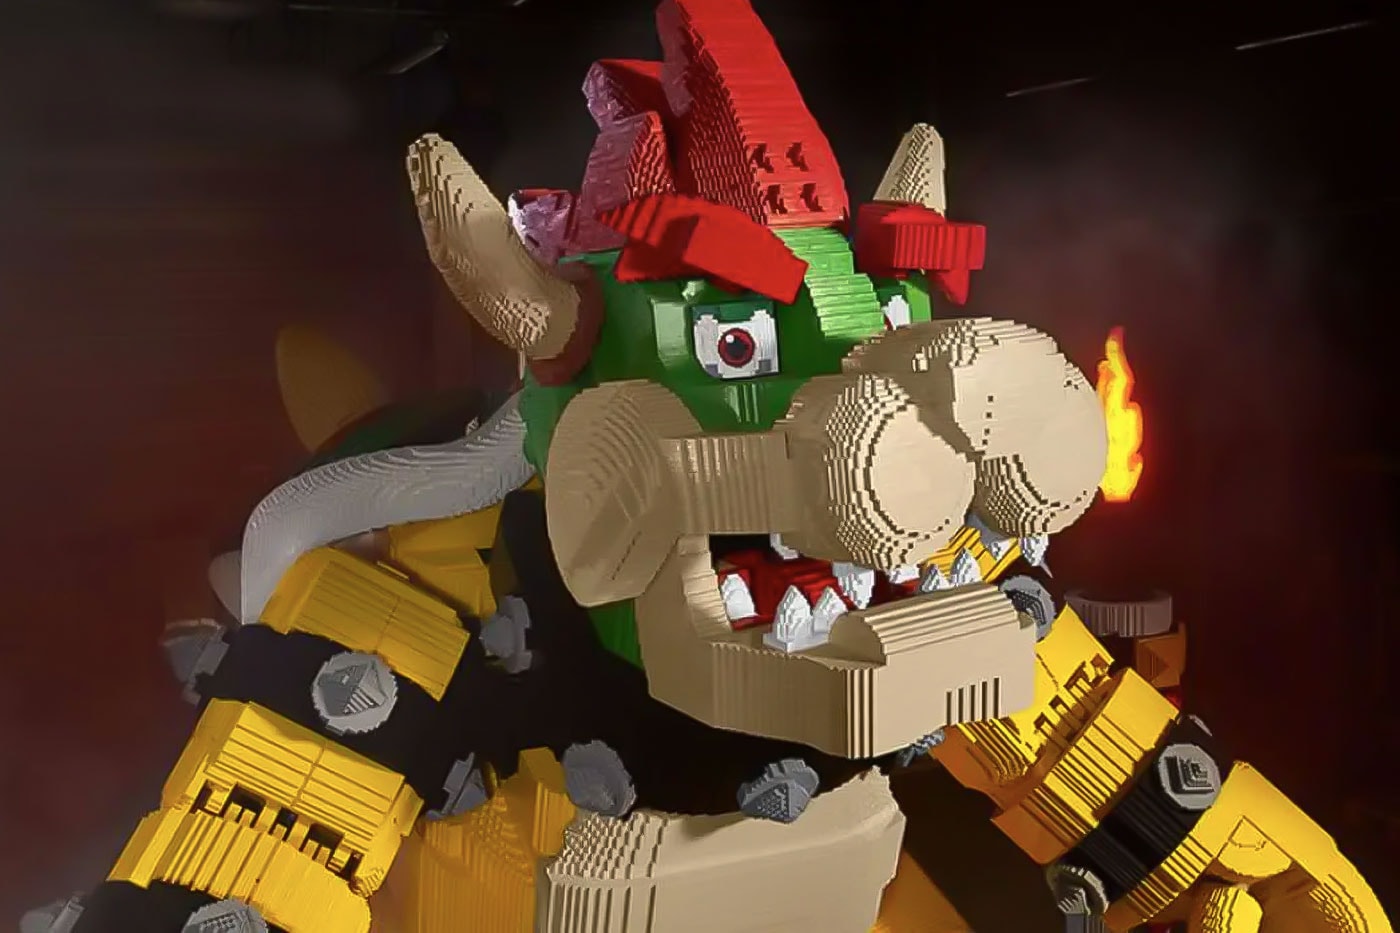 레고로 만들어진 초대형 ‘대마왕 쿠파’가 등장했다, 슈퍼 마리오